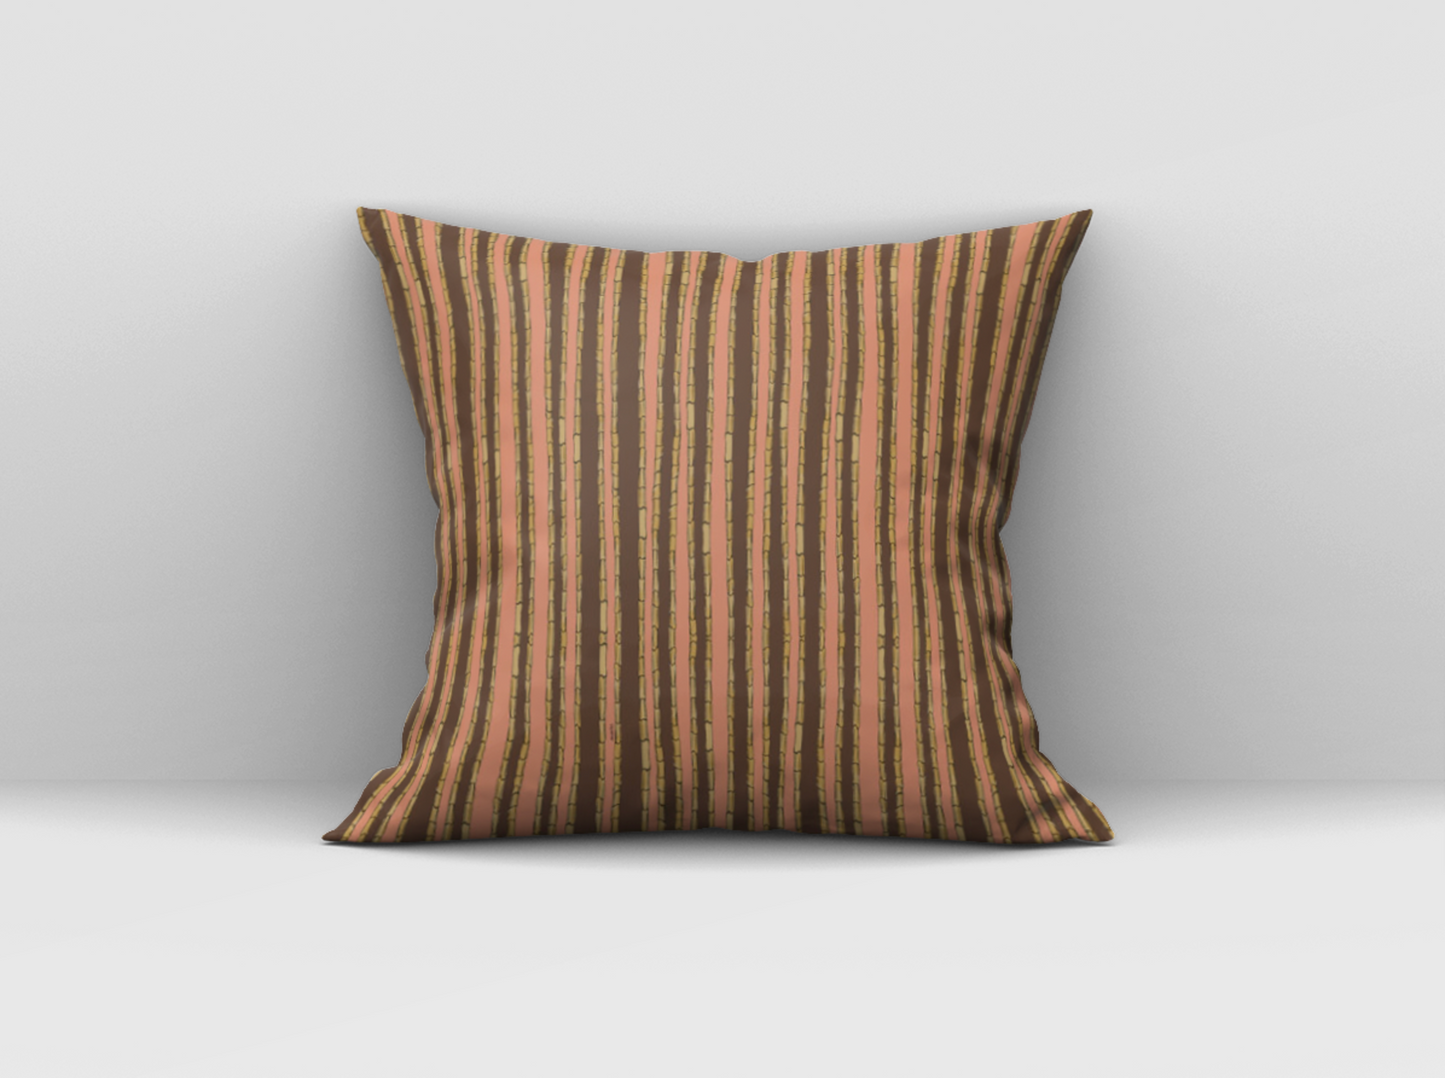 Bamboo cushion